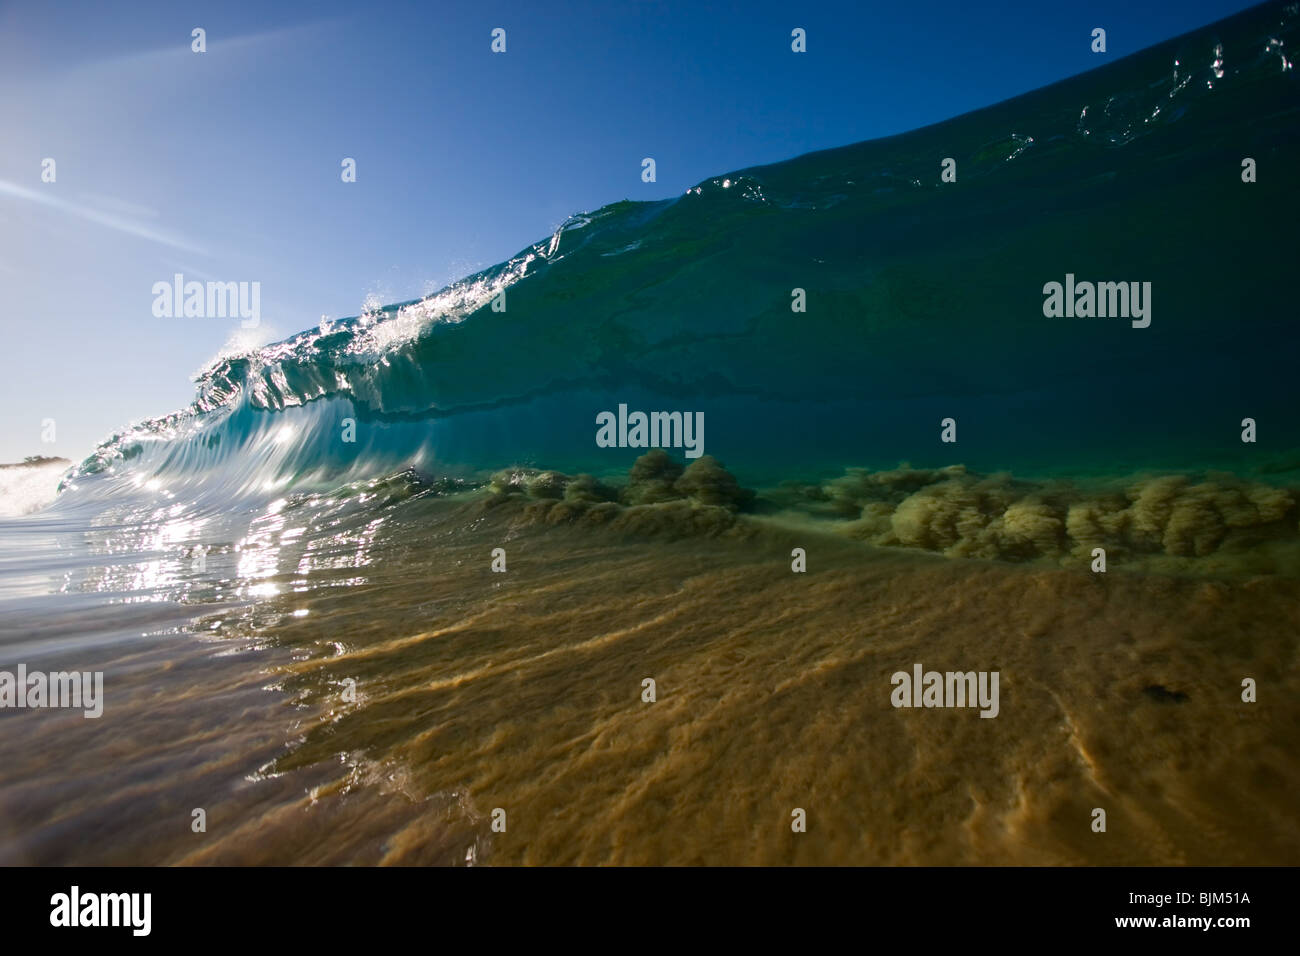 Eine glasige Shorebreak Welle zieht den Sand aus dem Boden, wie es in Zoll Wasser bricht. Stockfoto